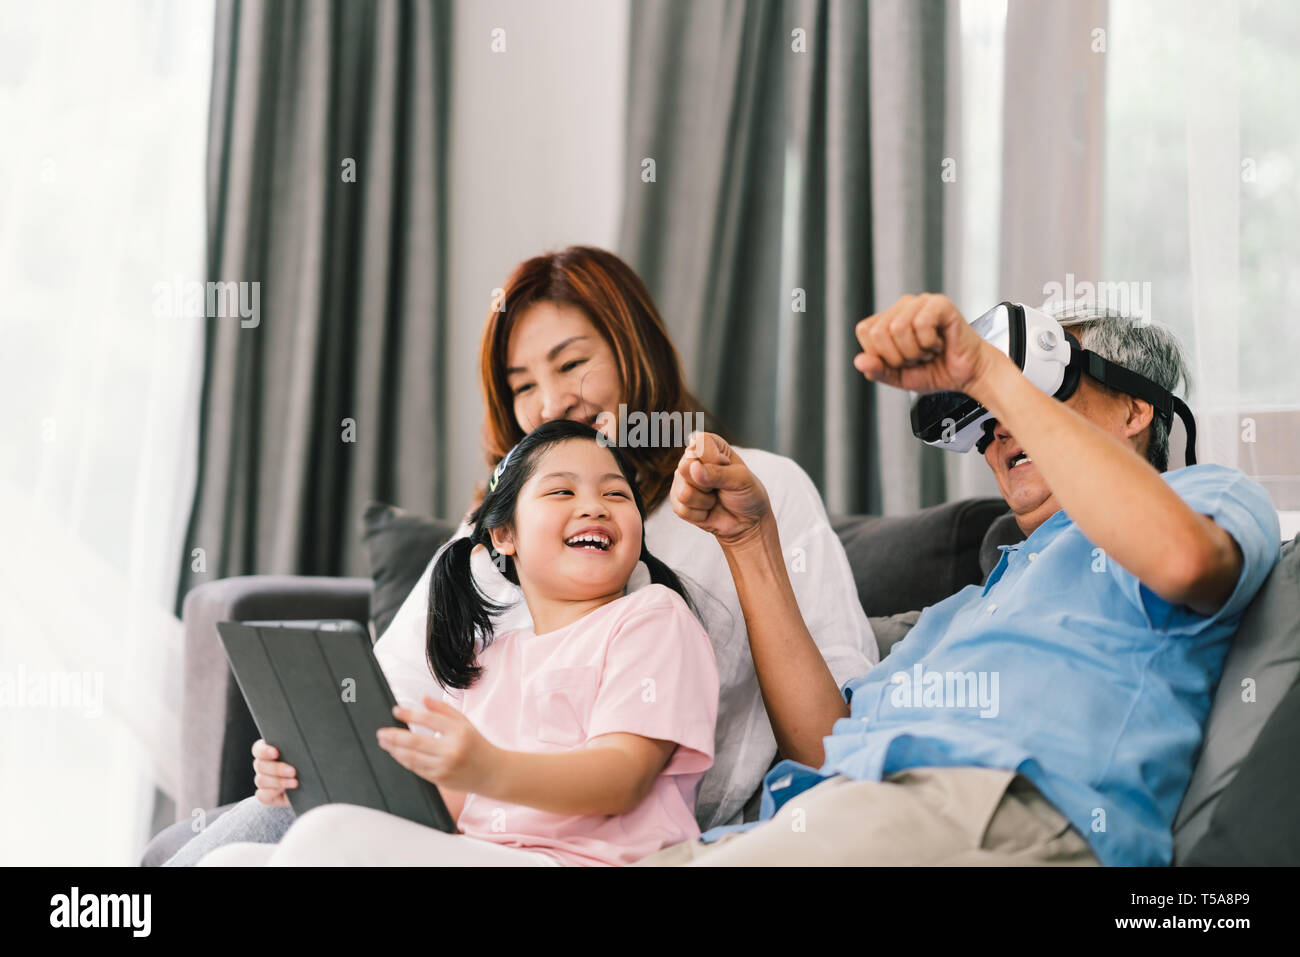 Belle heureux gens jouer ensemble de jeux virtuels, jeune fille, grand-père portant un casque VR. La vie de famille concept Banque D'Images